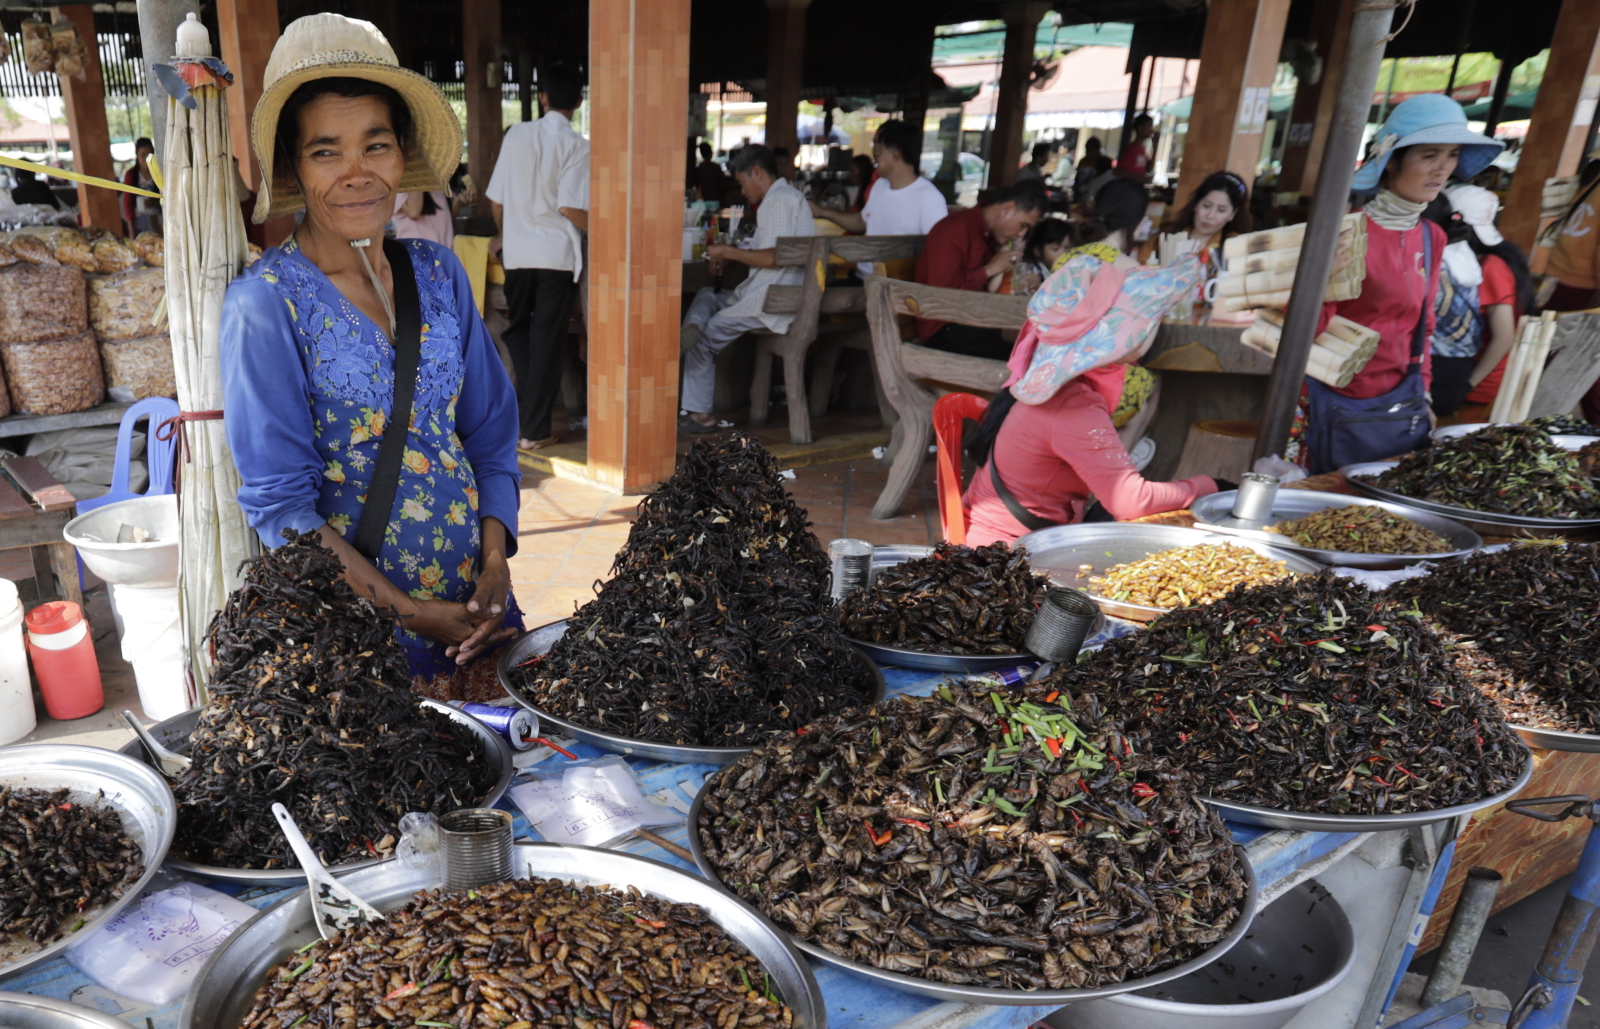 Insekty i pająki - przysmaki na targu w Kambodży. Fot. PAP/EPA/MAK REMISSA